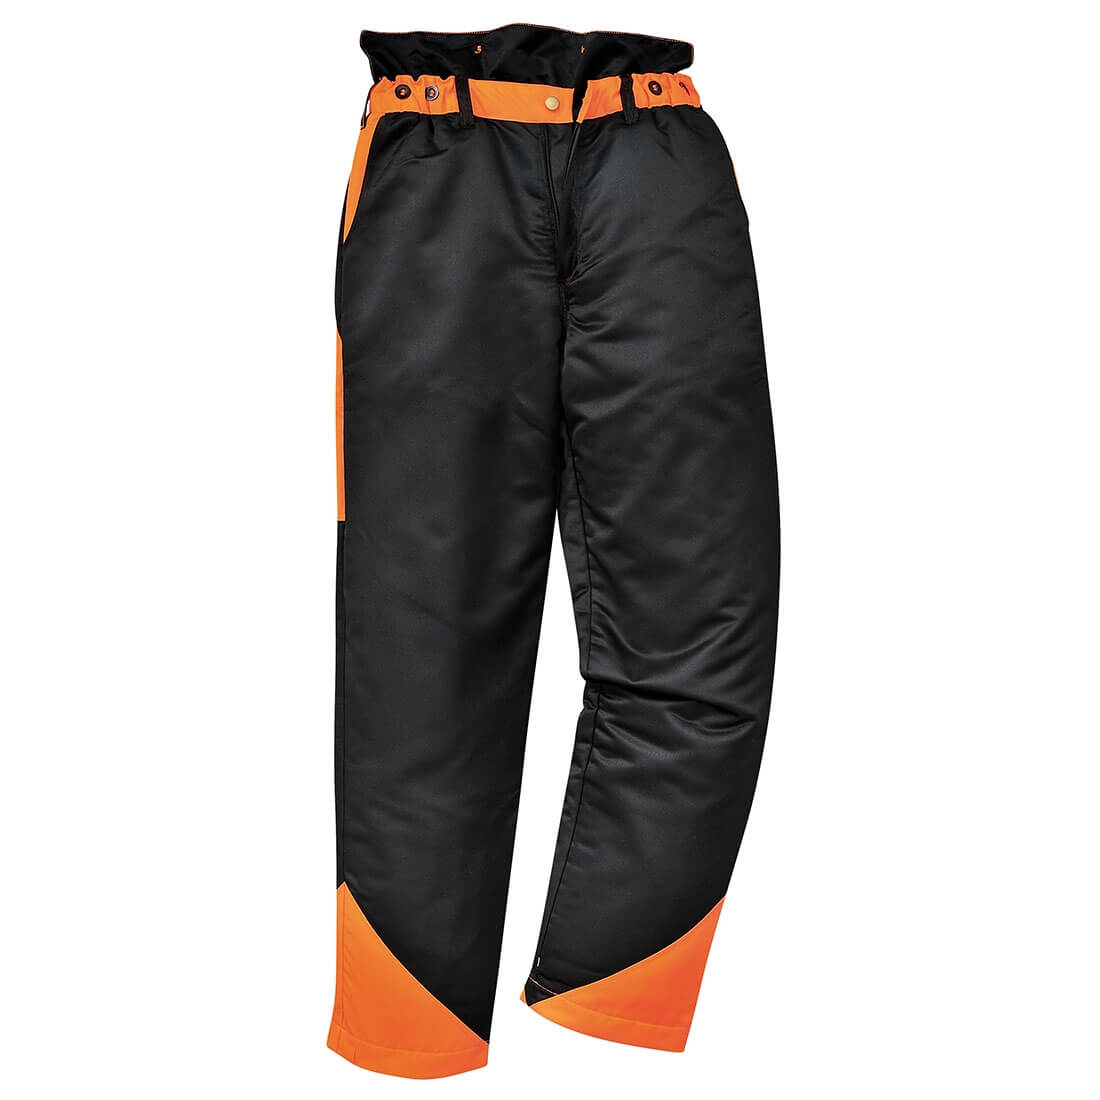 Pantalon Forestier Oak - Les vêtements de protection